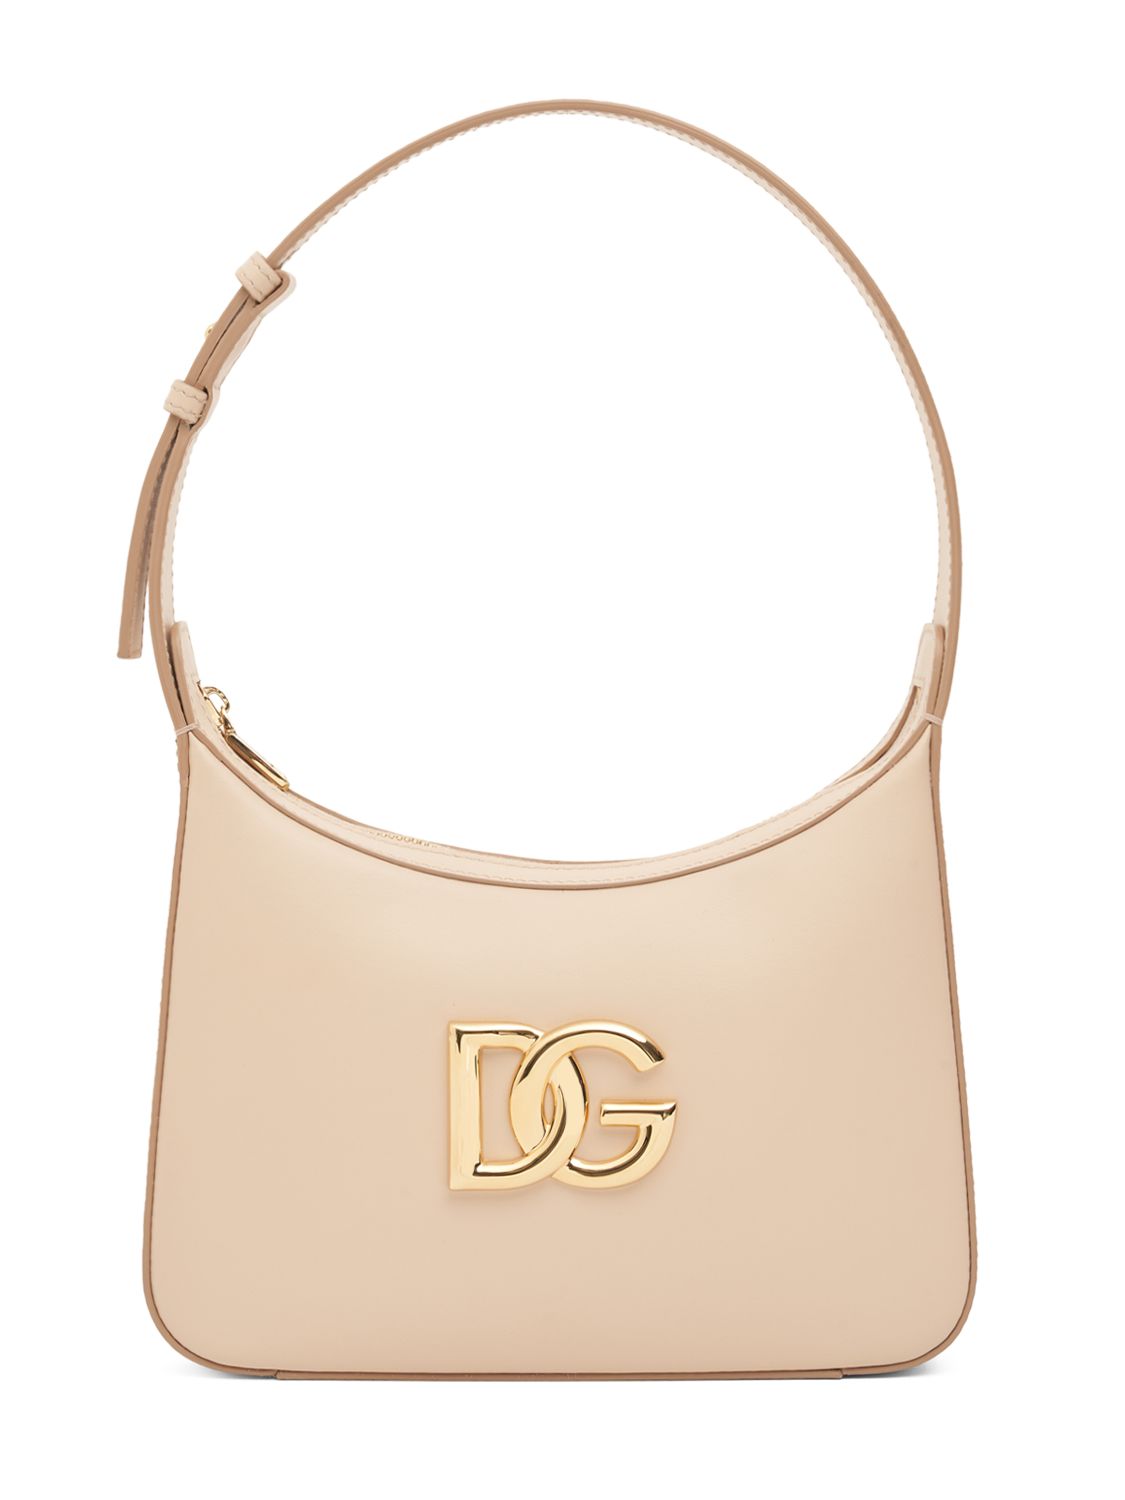 Dolce & Gabbana Logo Leather Shoulder Bag In Rosa Chiaro